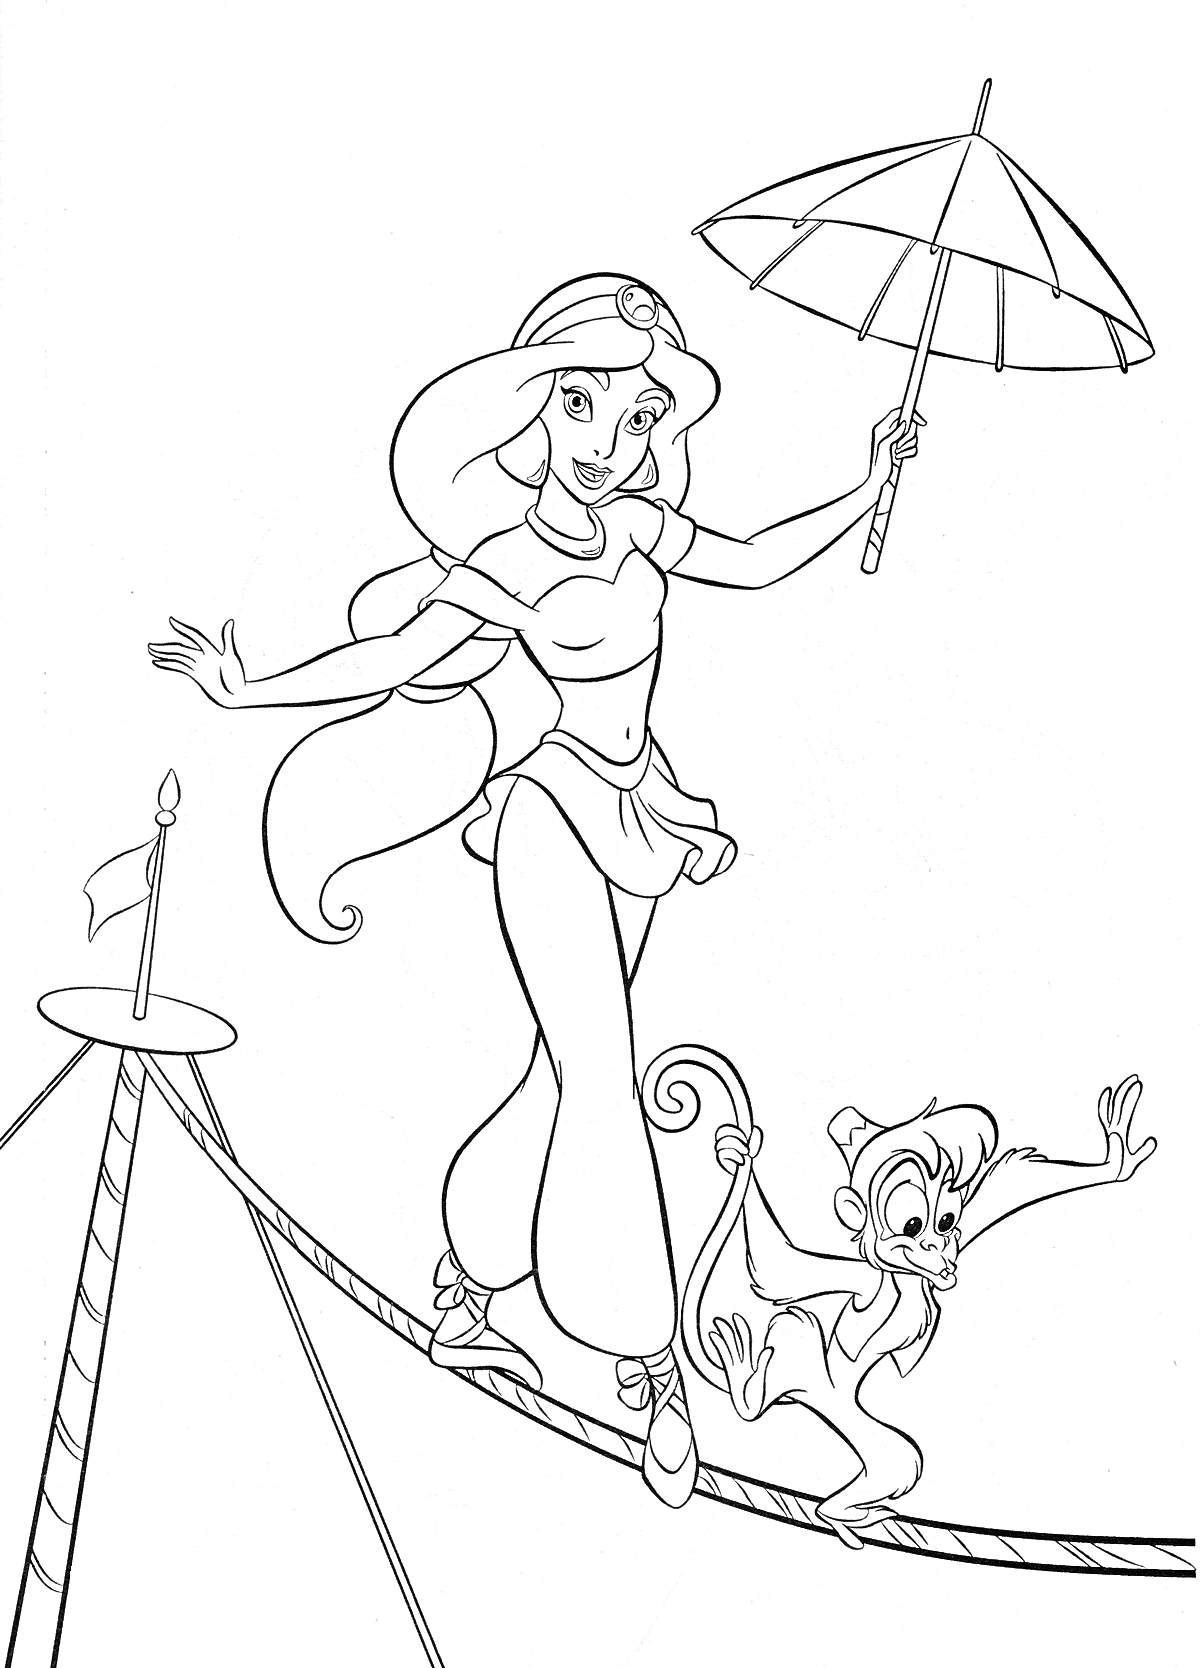 Раскраска Жасмин и обезьянка Абу идут по канату, Жасмин держит зонт